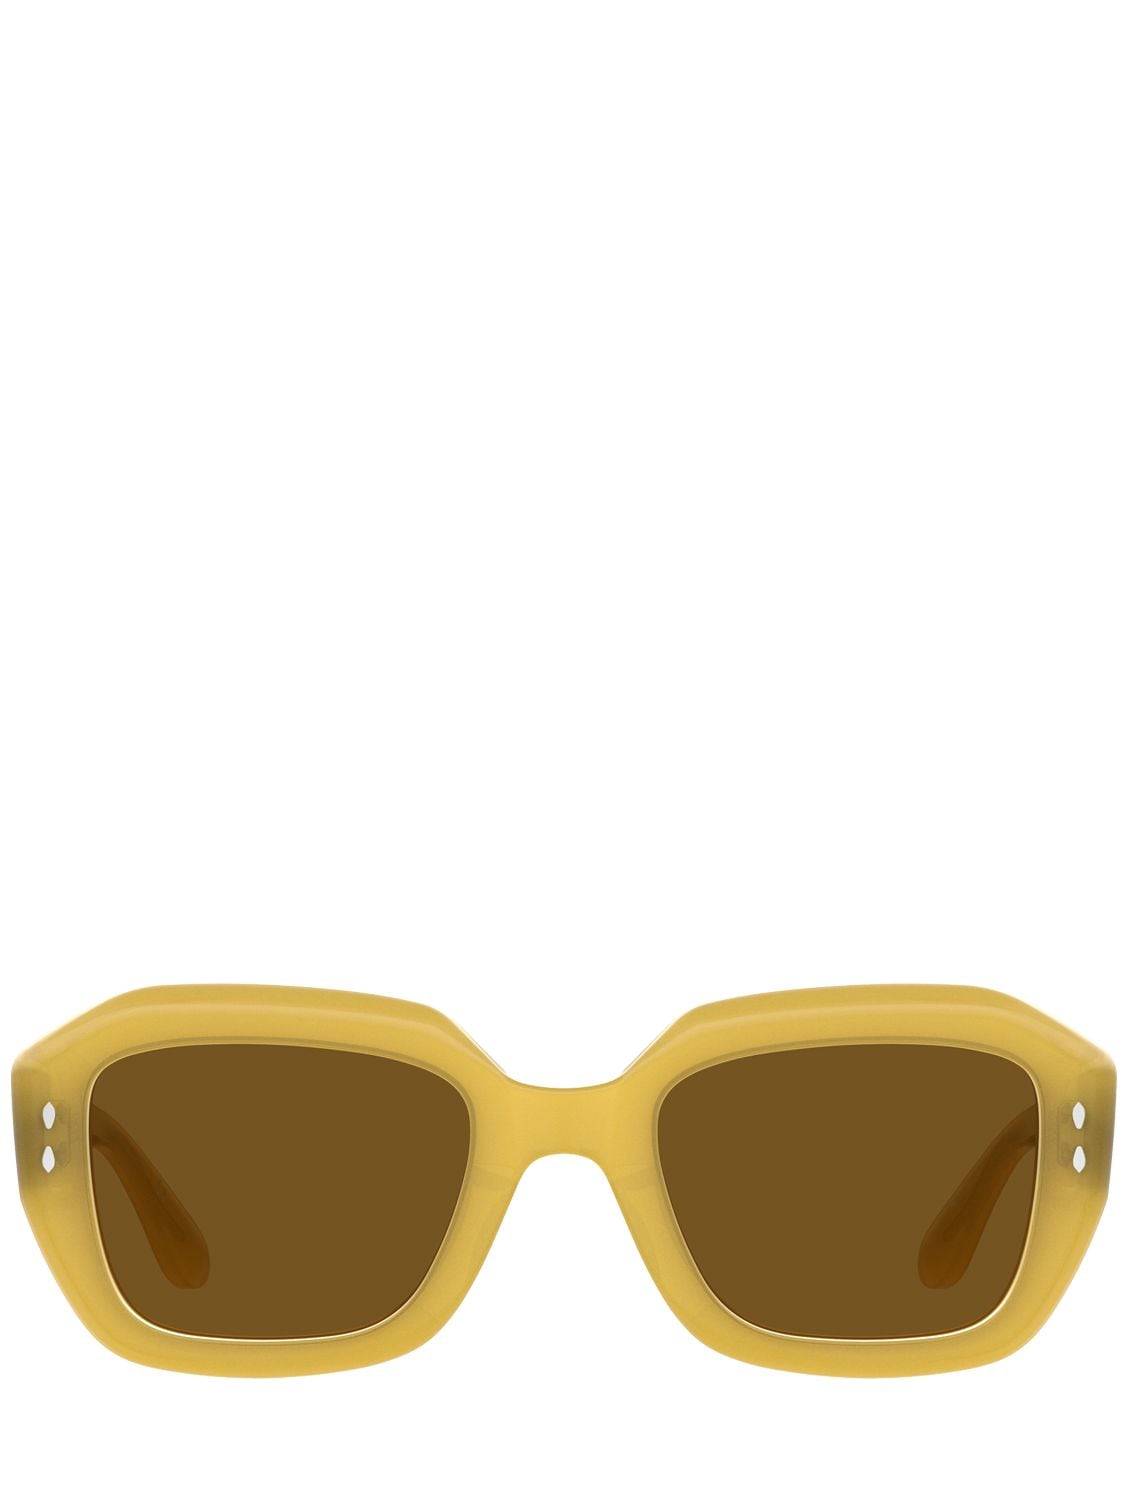 Isabel Marant Round Acetate Sunglasses – WOMEN > ACCESSORIES > SUNGLASSES